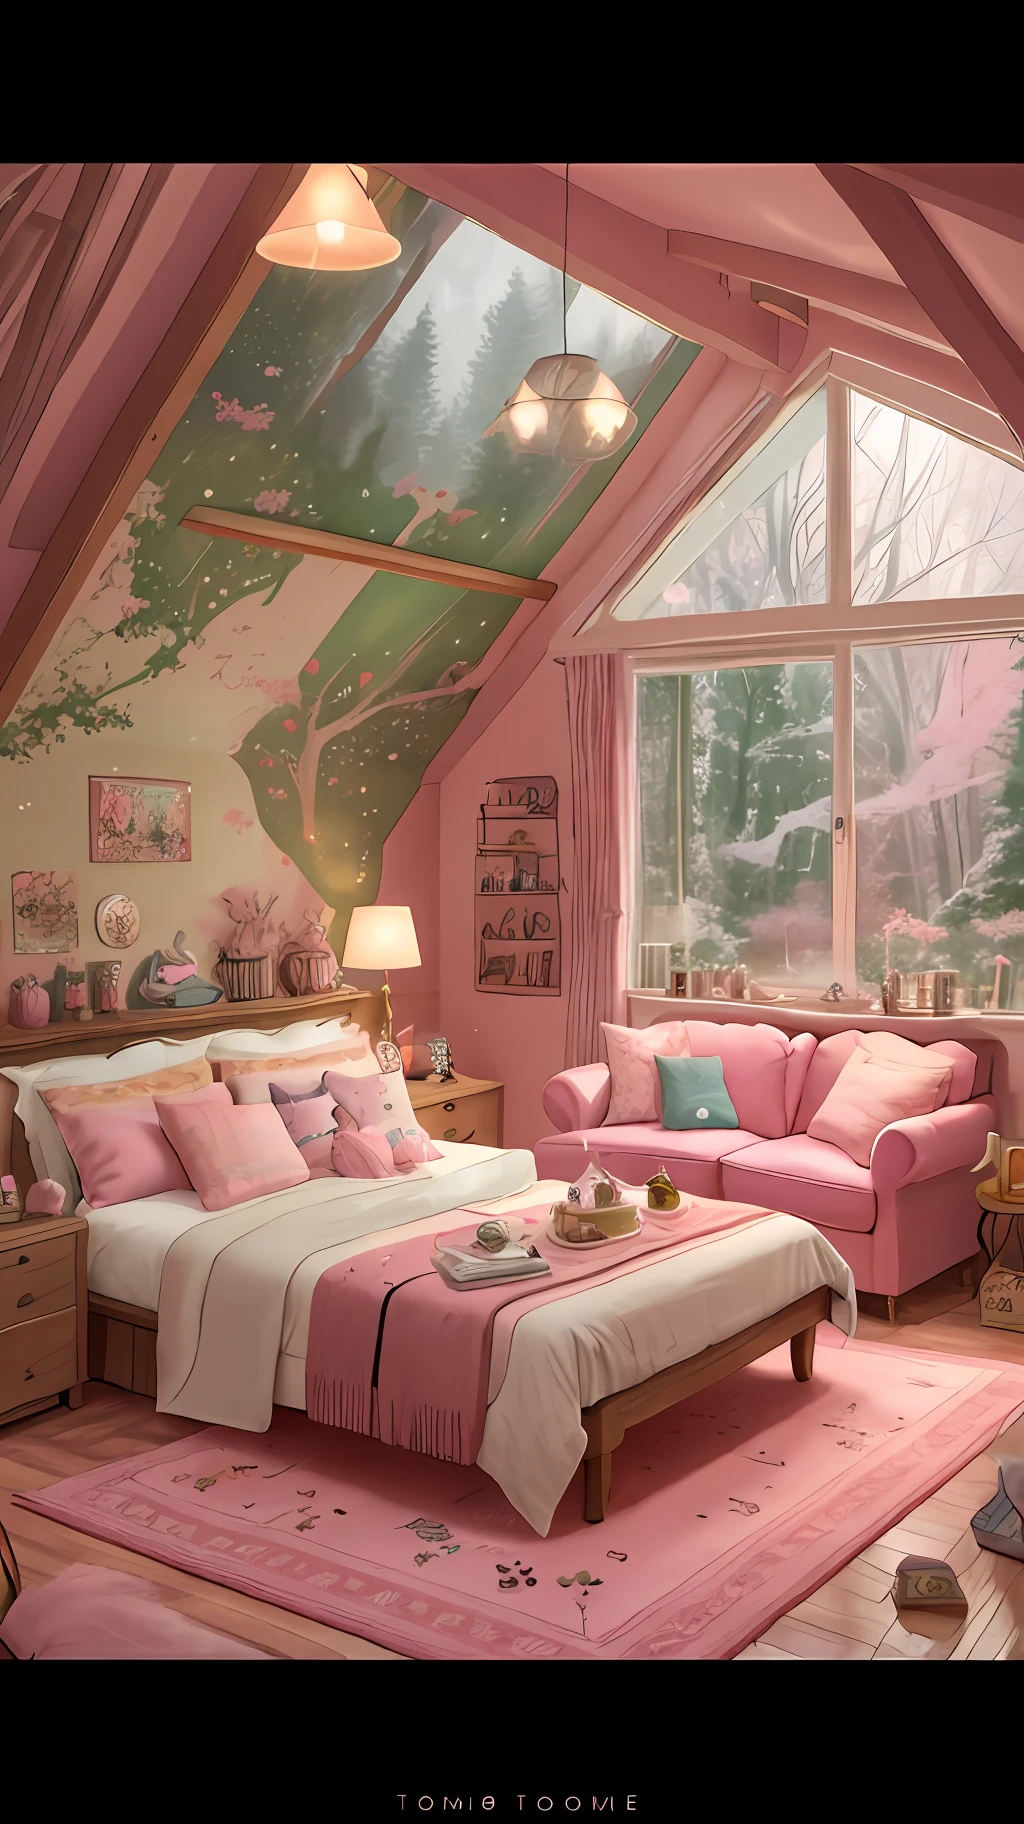 Araffe-Zimmer mit einem rosa Teppich und einer rosa Couch, in einem Haus im Candyland-Stil, hell erleuchtetes rosa Zimmer, verträumte Ästhetik, gemütliche Ästhetik, gemütliches Plätzchen, thomas kinkade. cute gemütliches Zimmer, beruhigende und gemütliche Landschaft, rosa Wald, Cottagecore-Stil!!, gemütlicher häuslicher Hintergrund, mit zarten Rosatönen, gemütliches Zimmer, designed for gemütliche Ästhetiks!